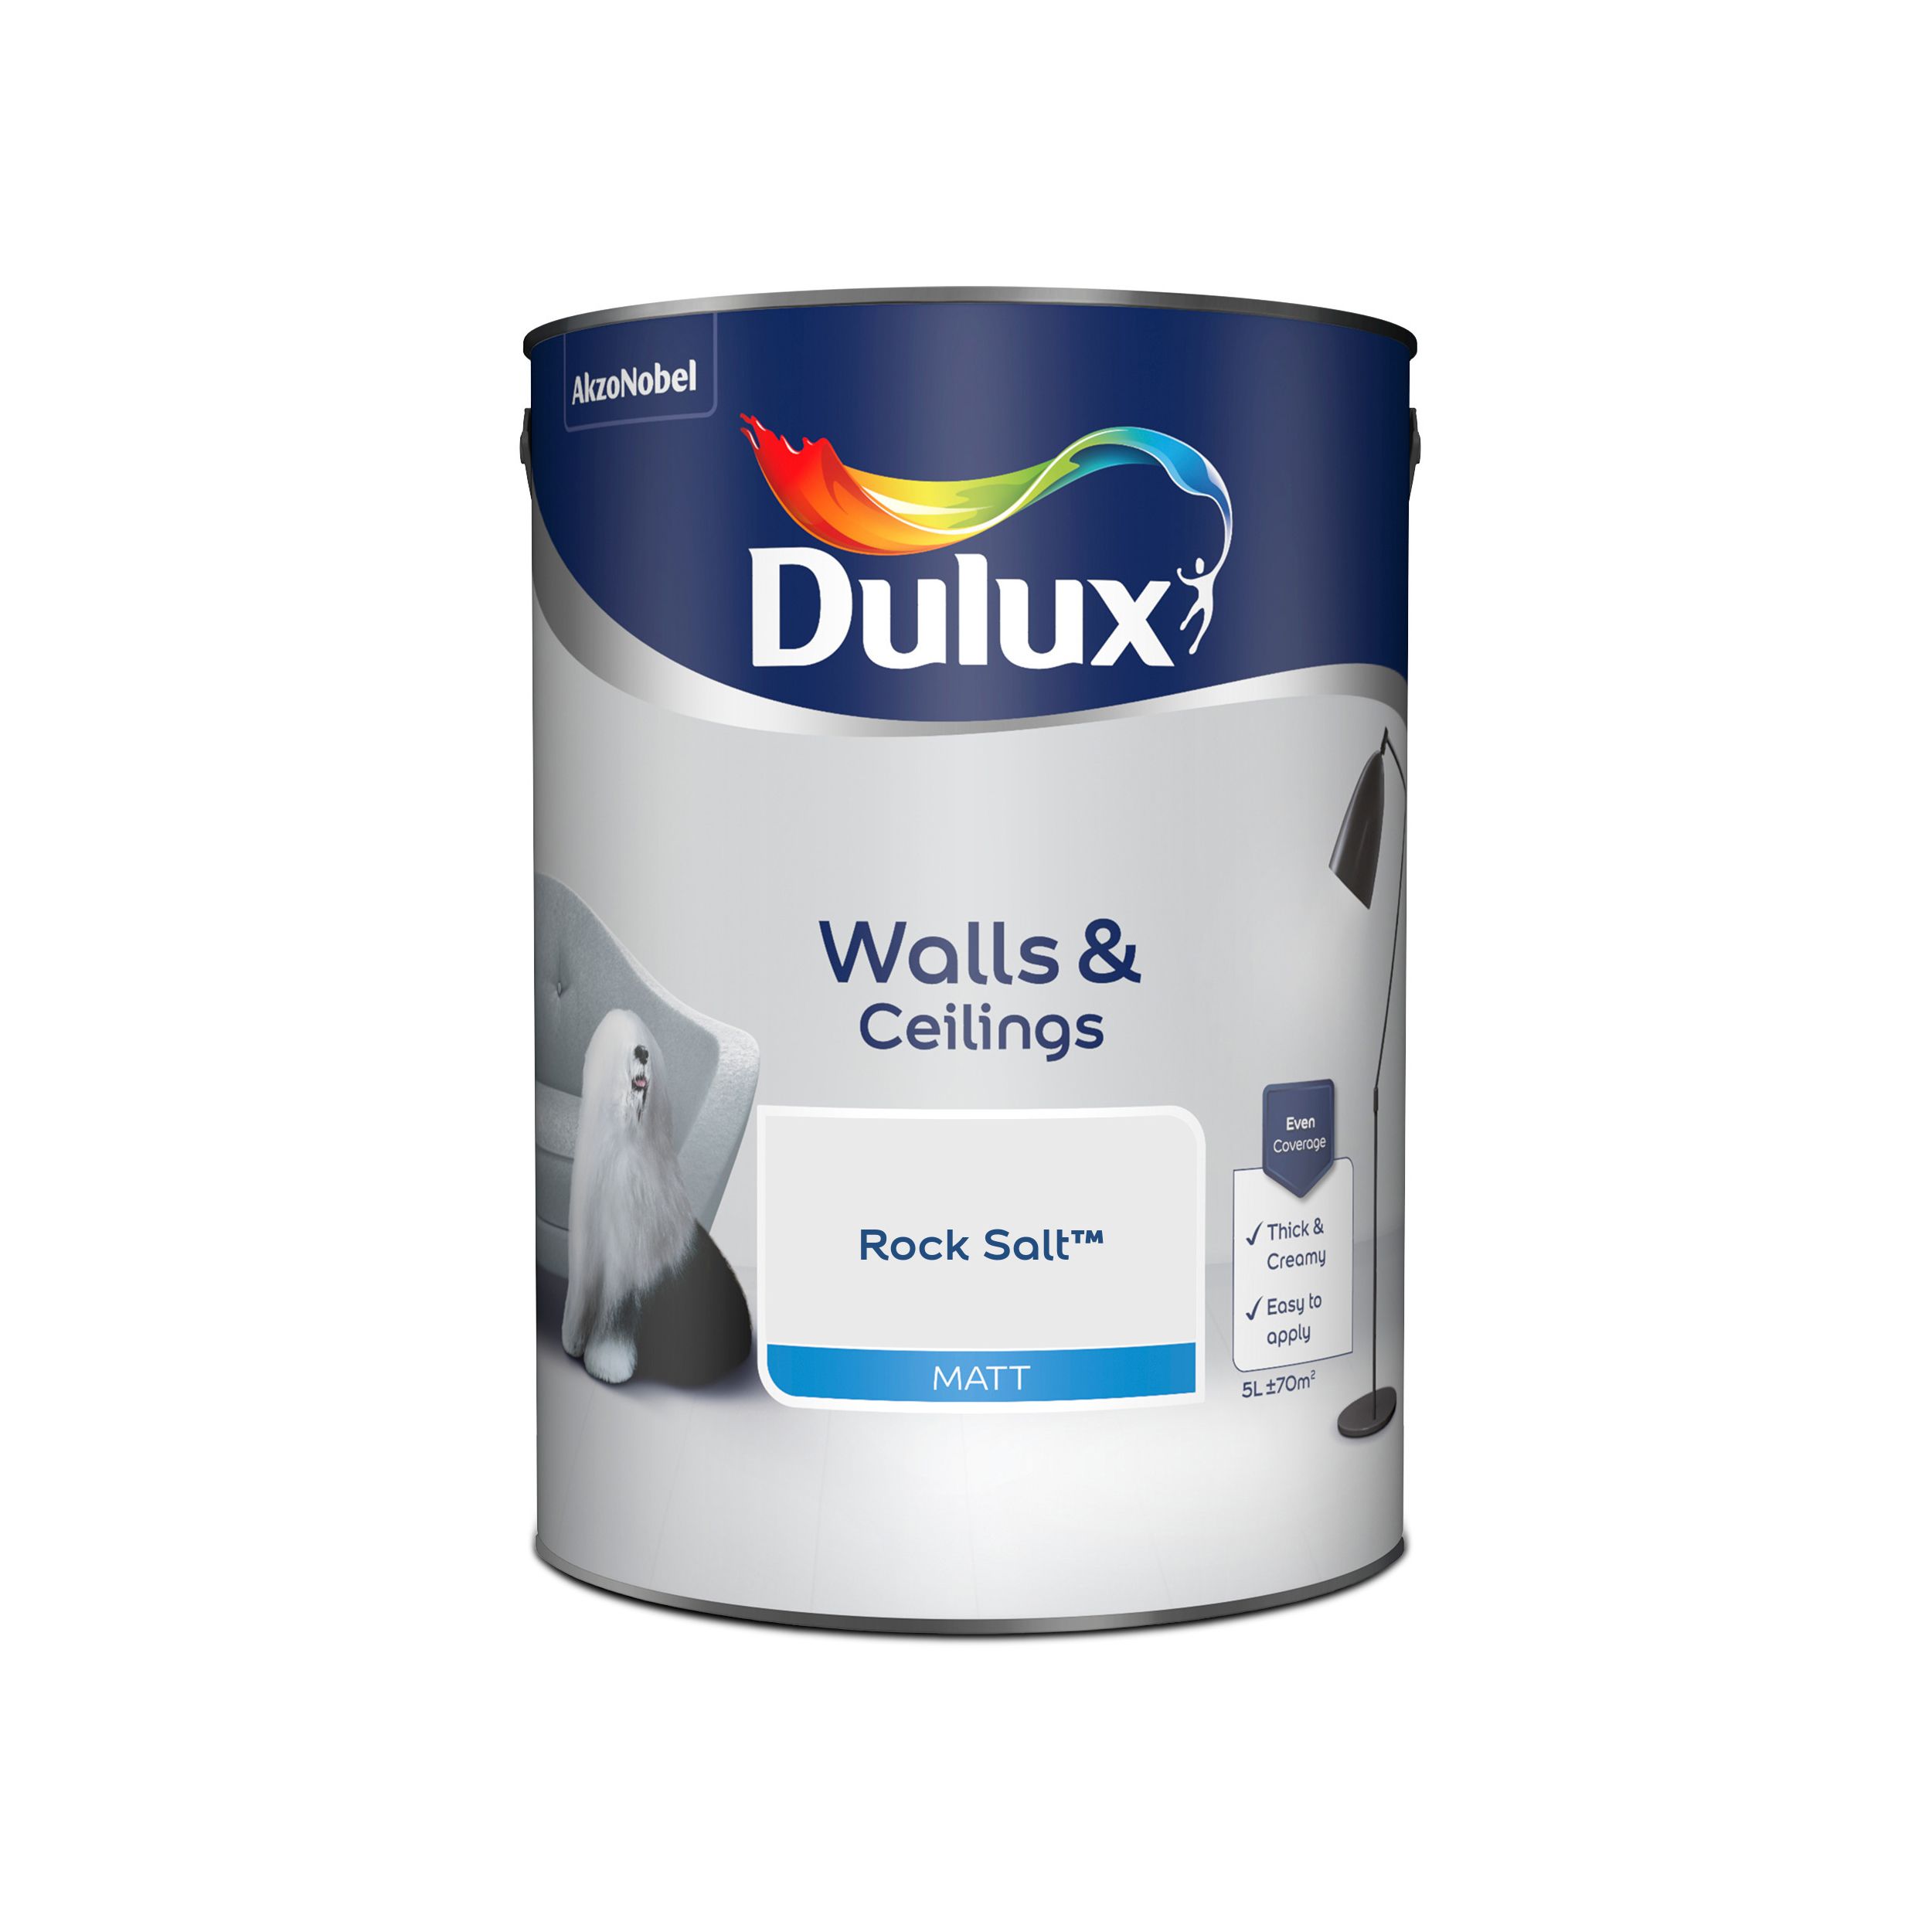 Dulux Walls & ceilings Rock salt Matt Emulsion paint, 5L